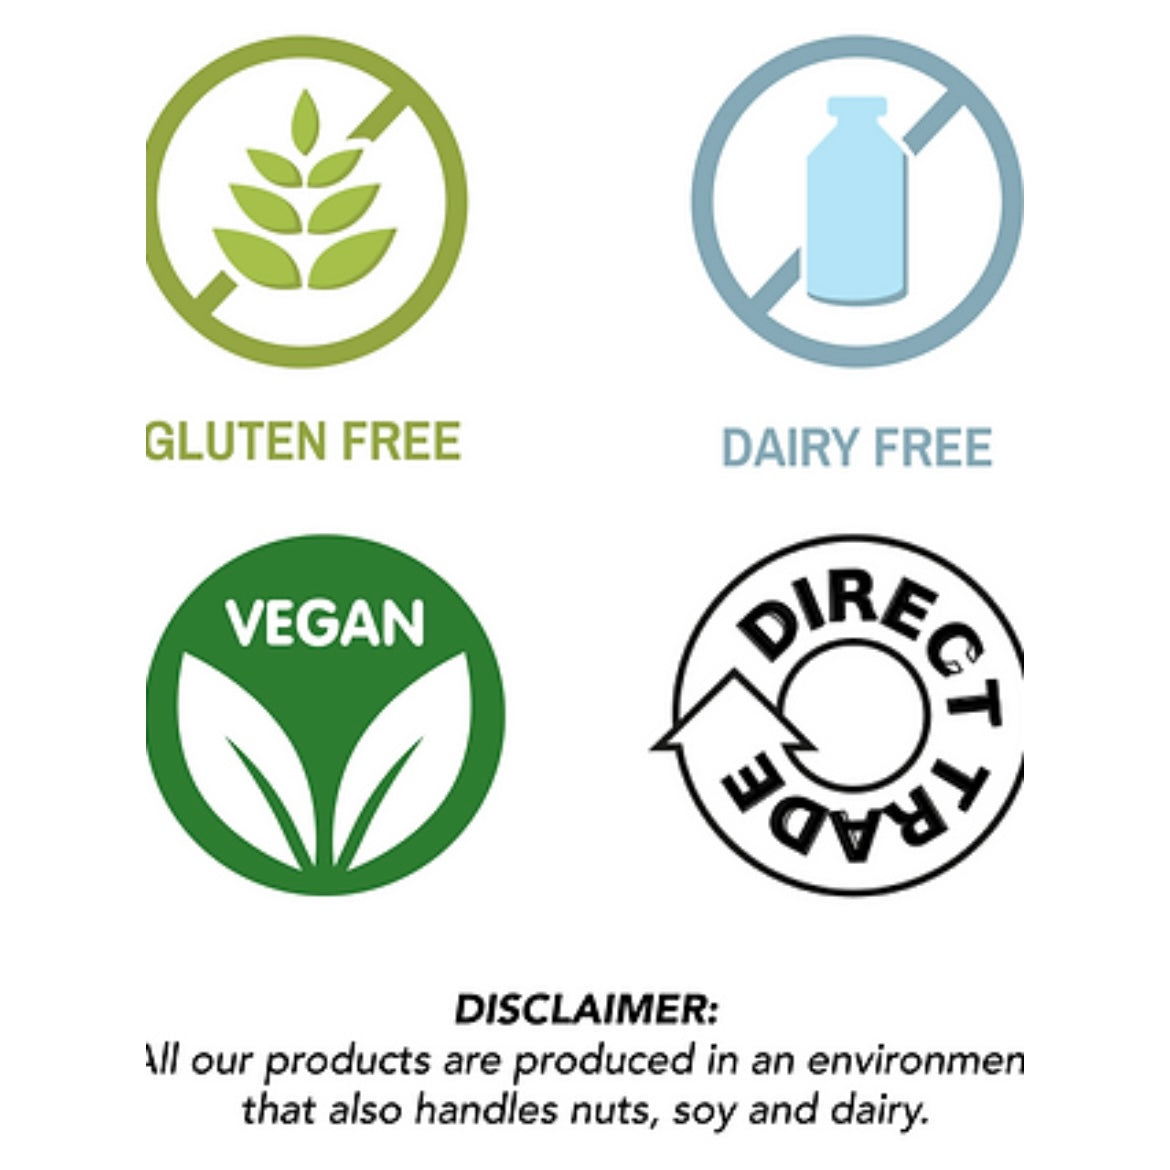 Gluten free, dairy free, vegan, direct trade.